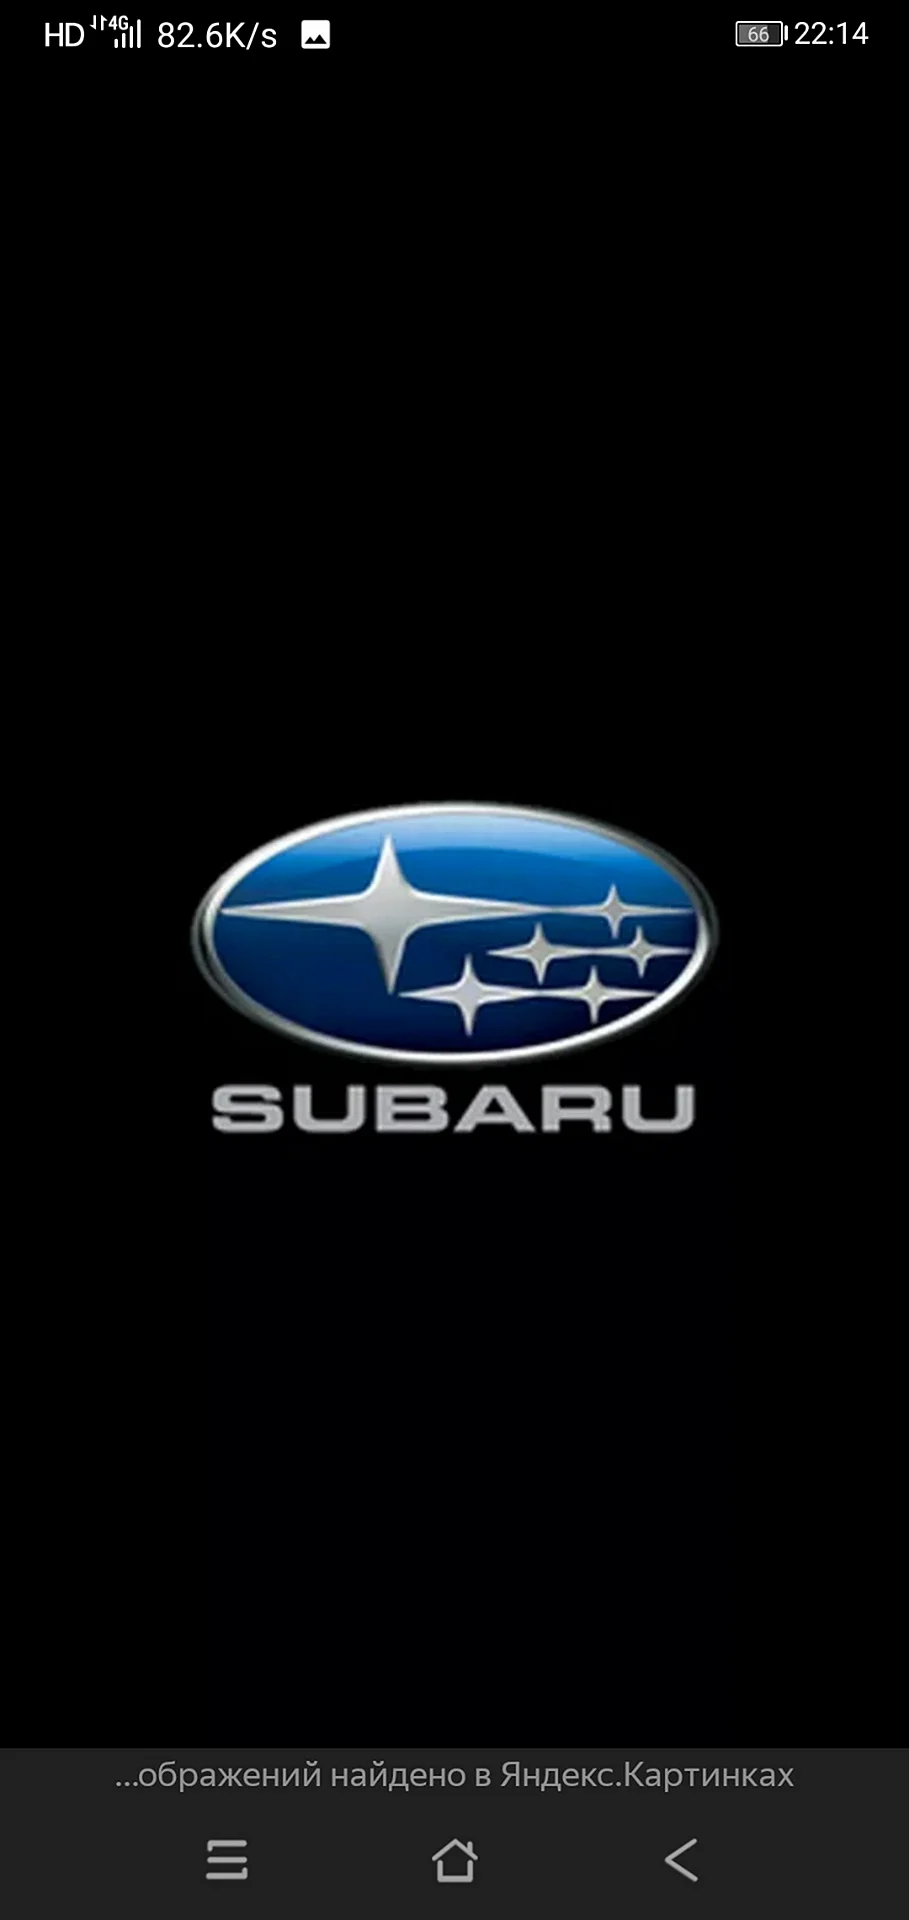 Subaru Logo Wallpaper For iPhone